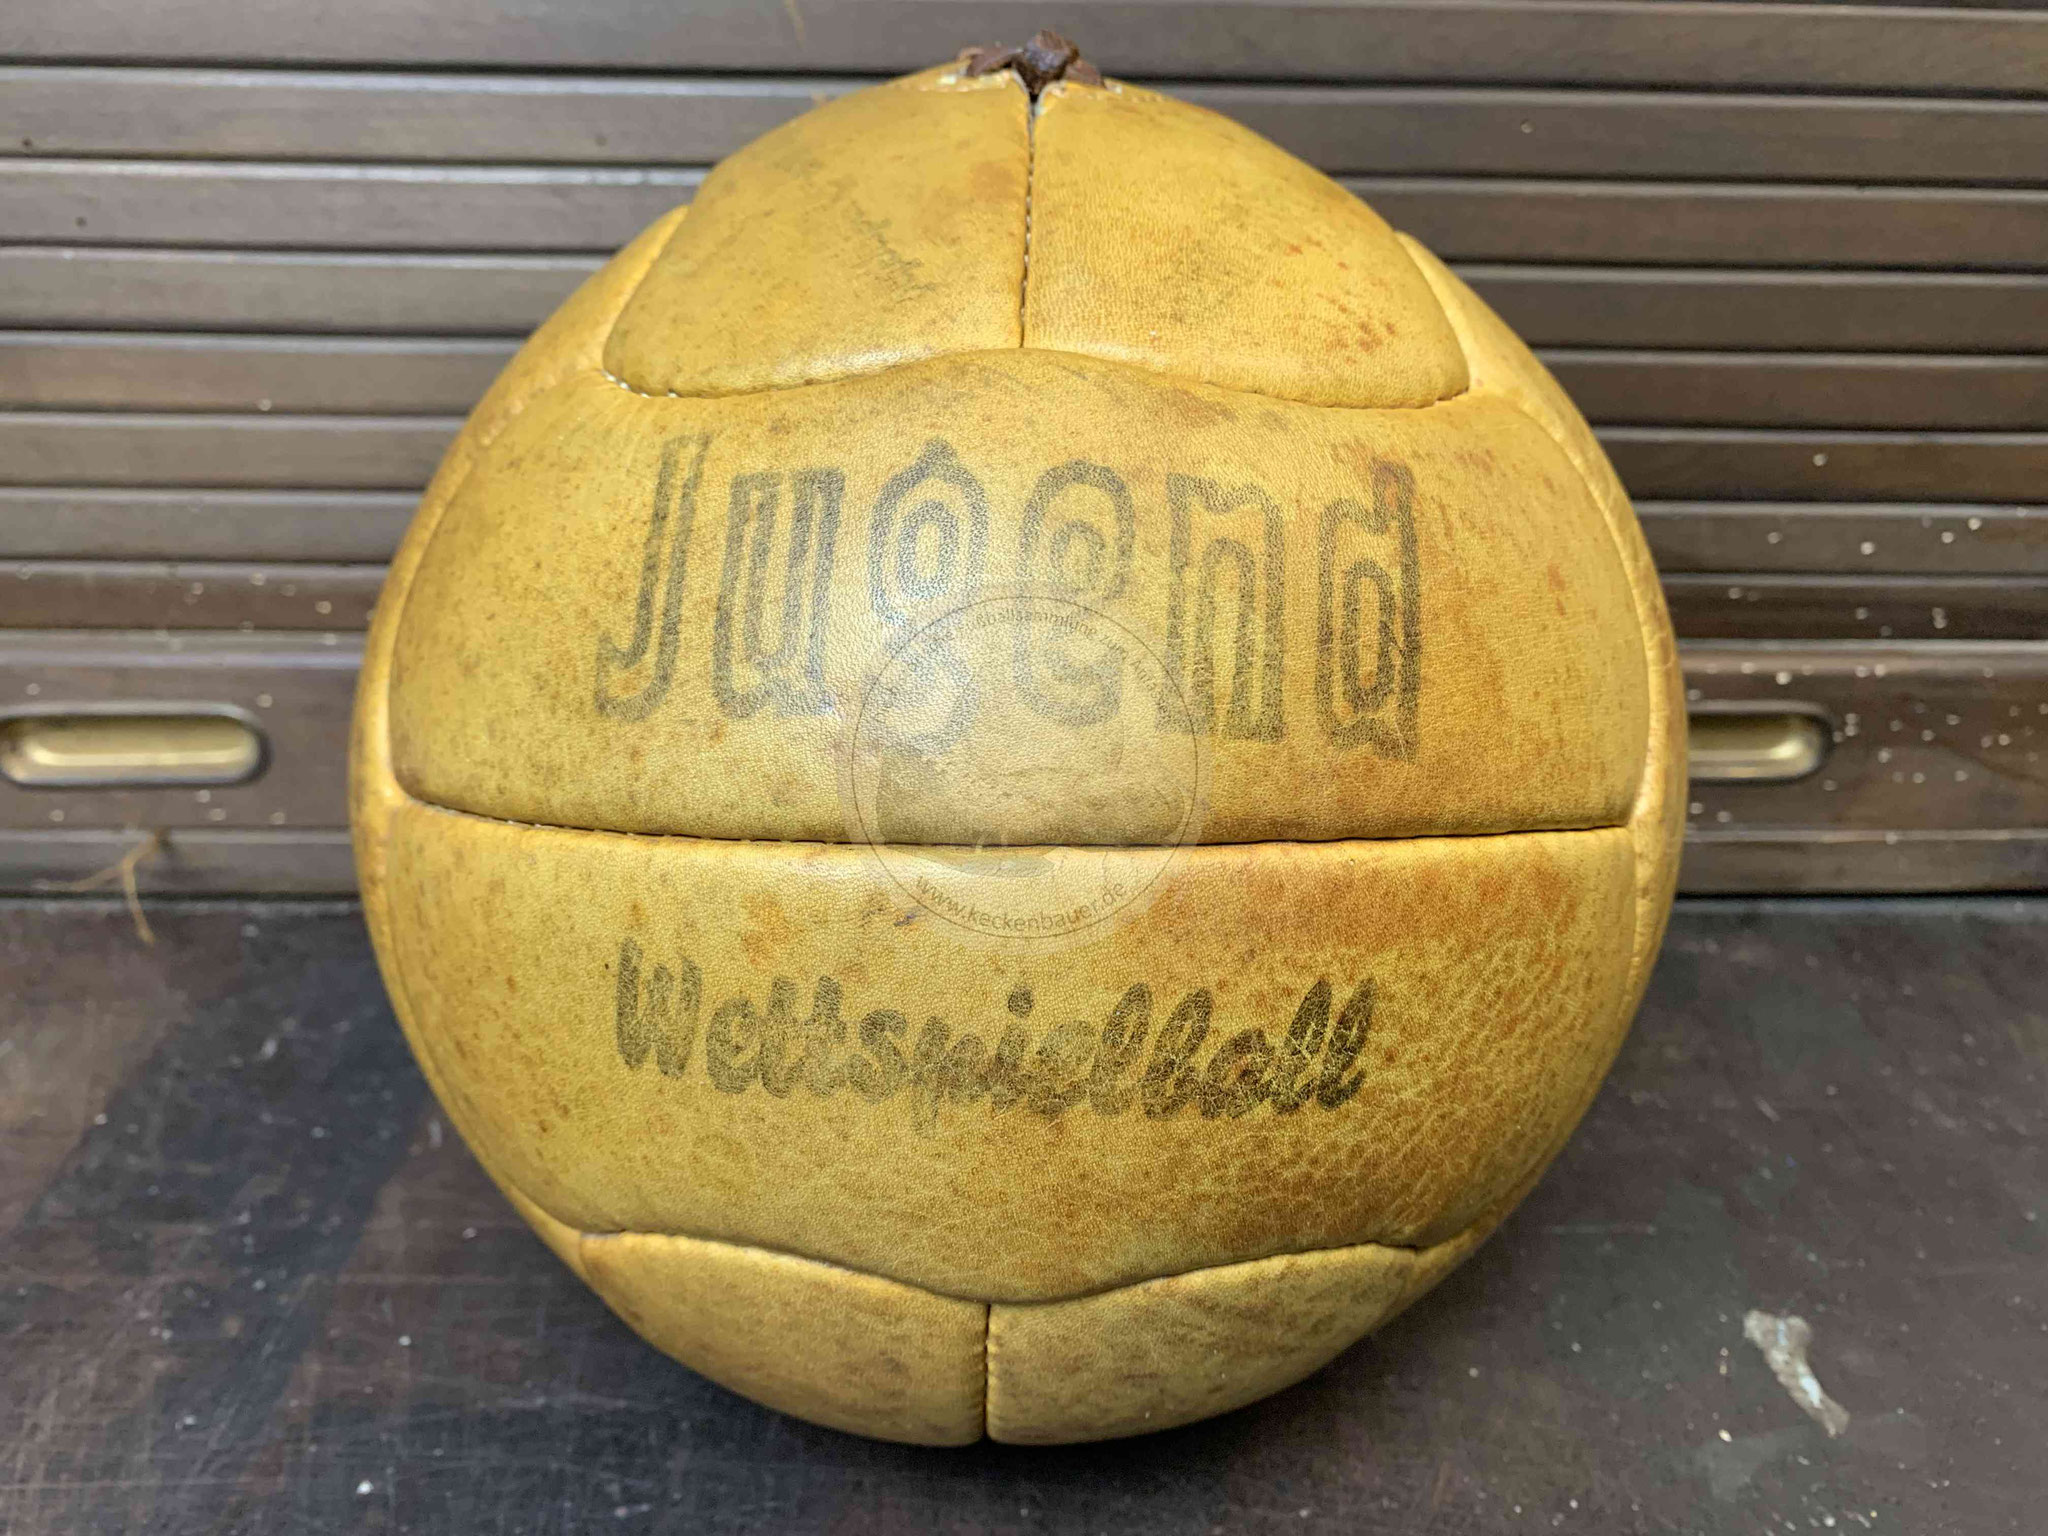 Fußball "Jugend Wettspielball" mit zwei Panelen je Seite und klassischer Naht für die Ballblase